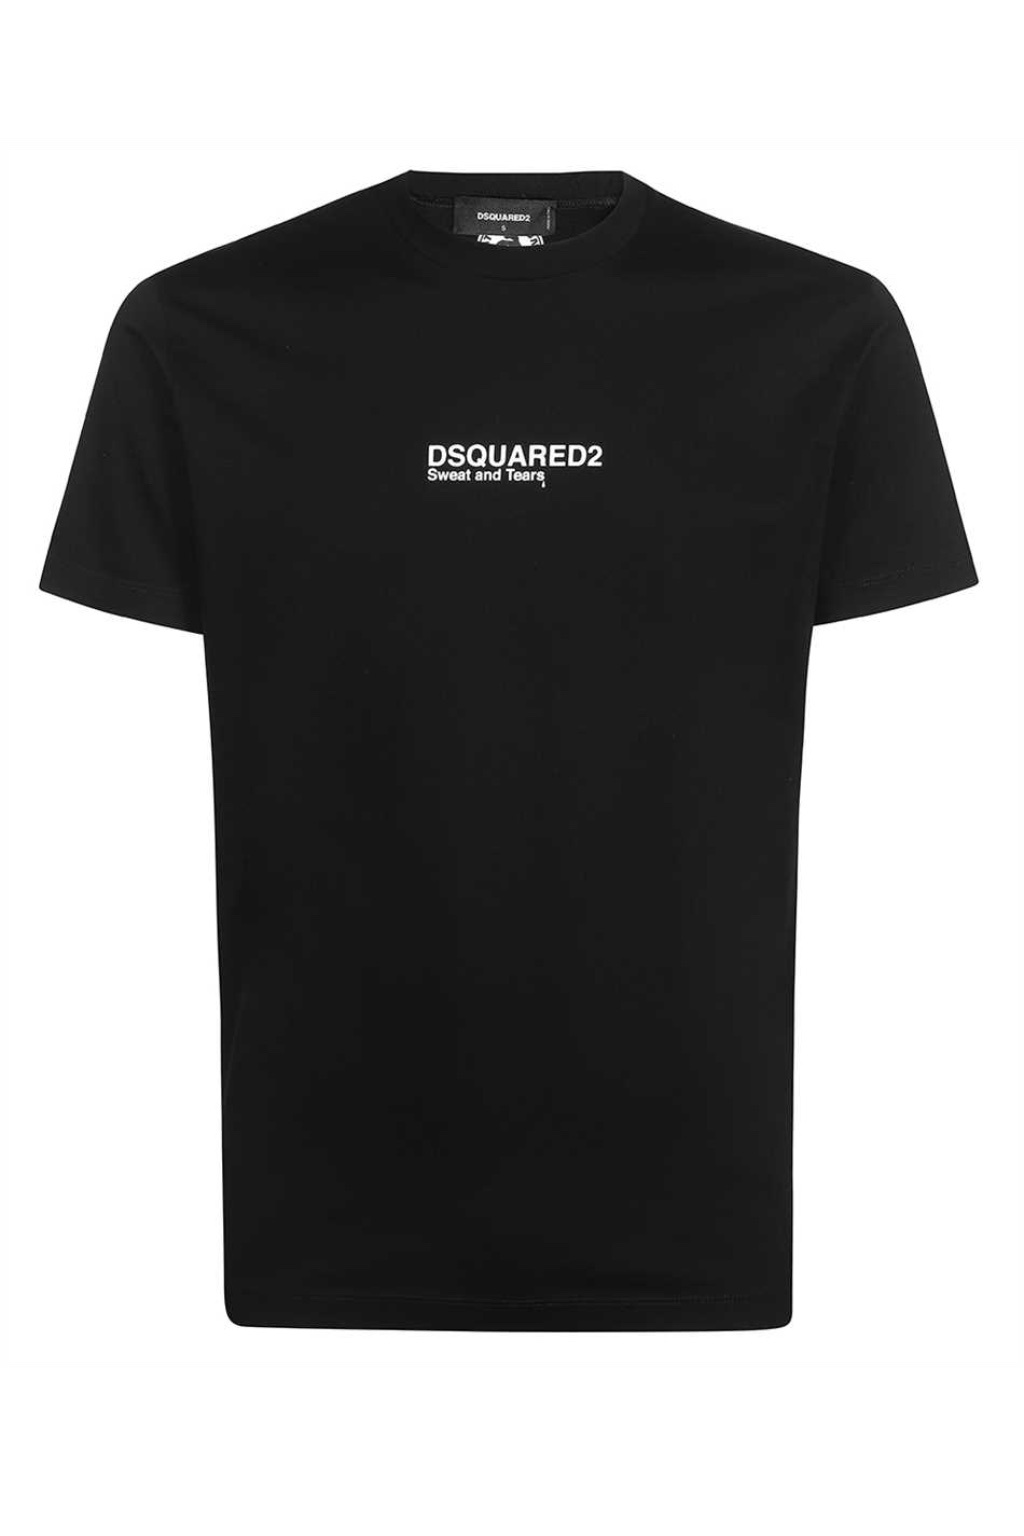 Pánské tričko Dsquared2 S74GD0946 černé